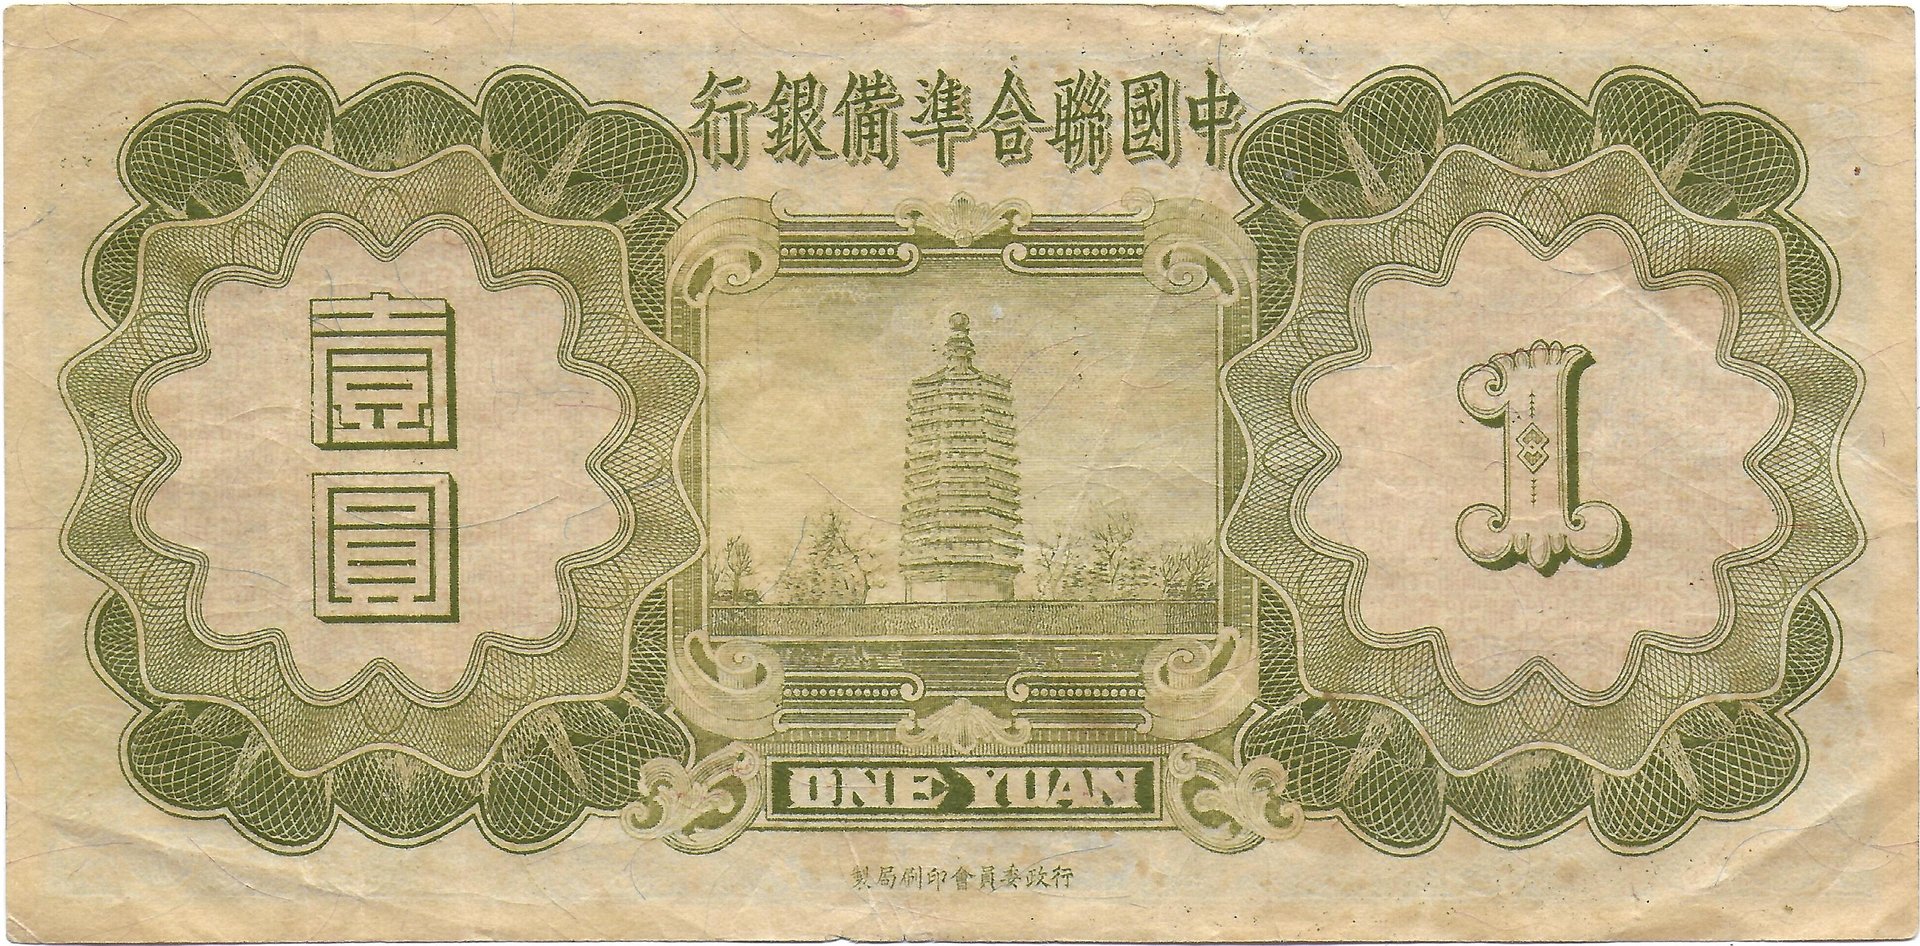 Bank of China back.jpg